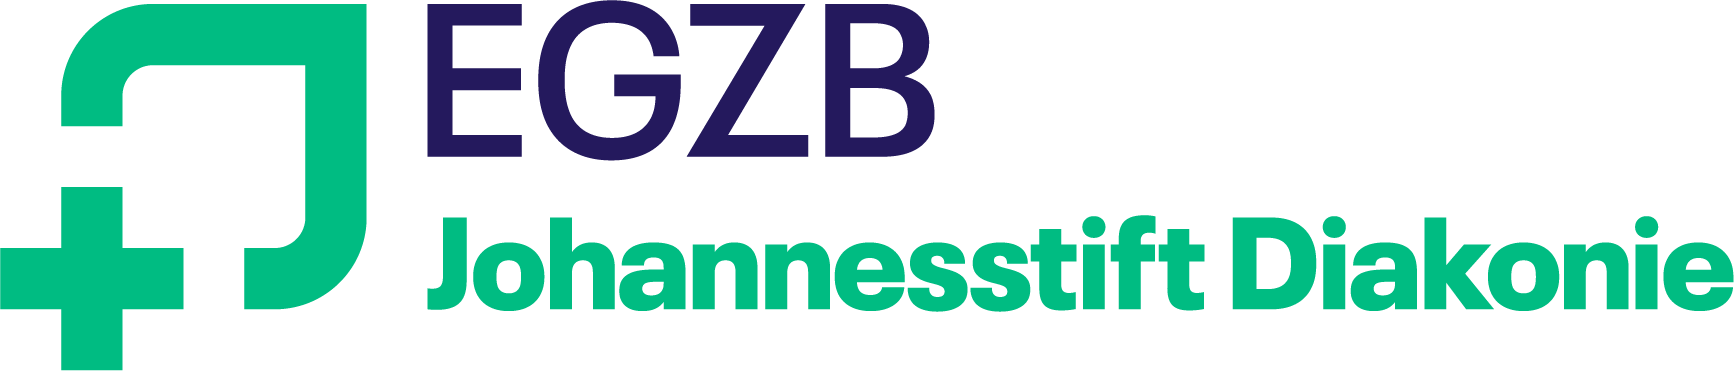 Logo: EGZB